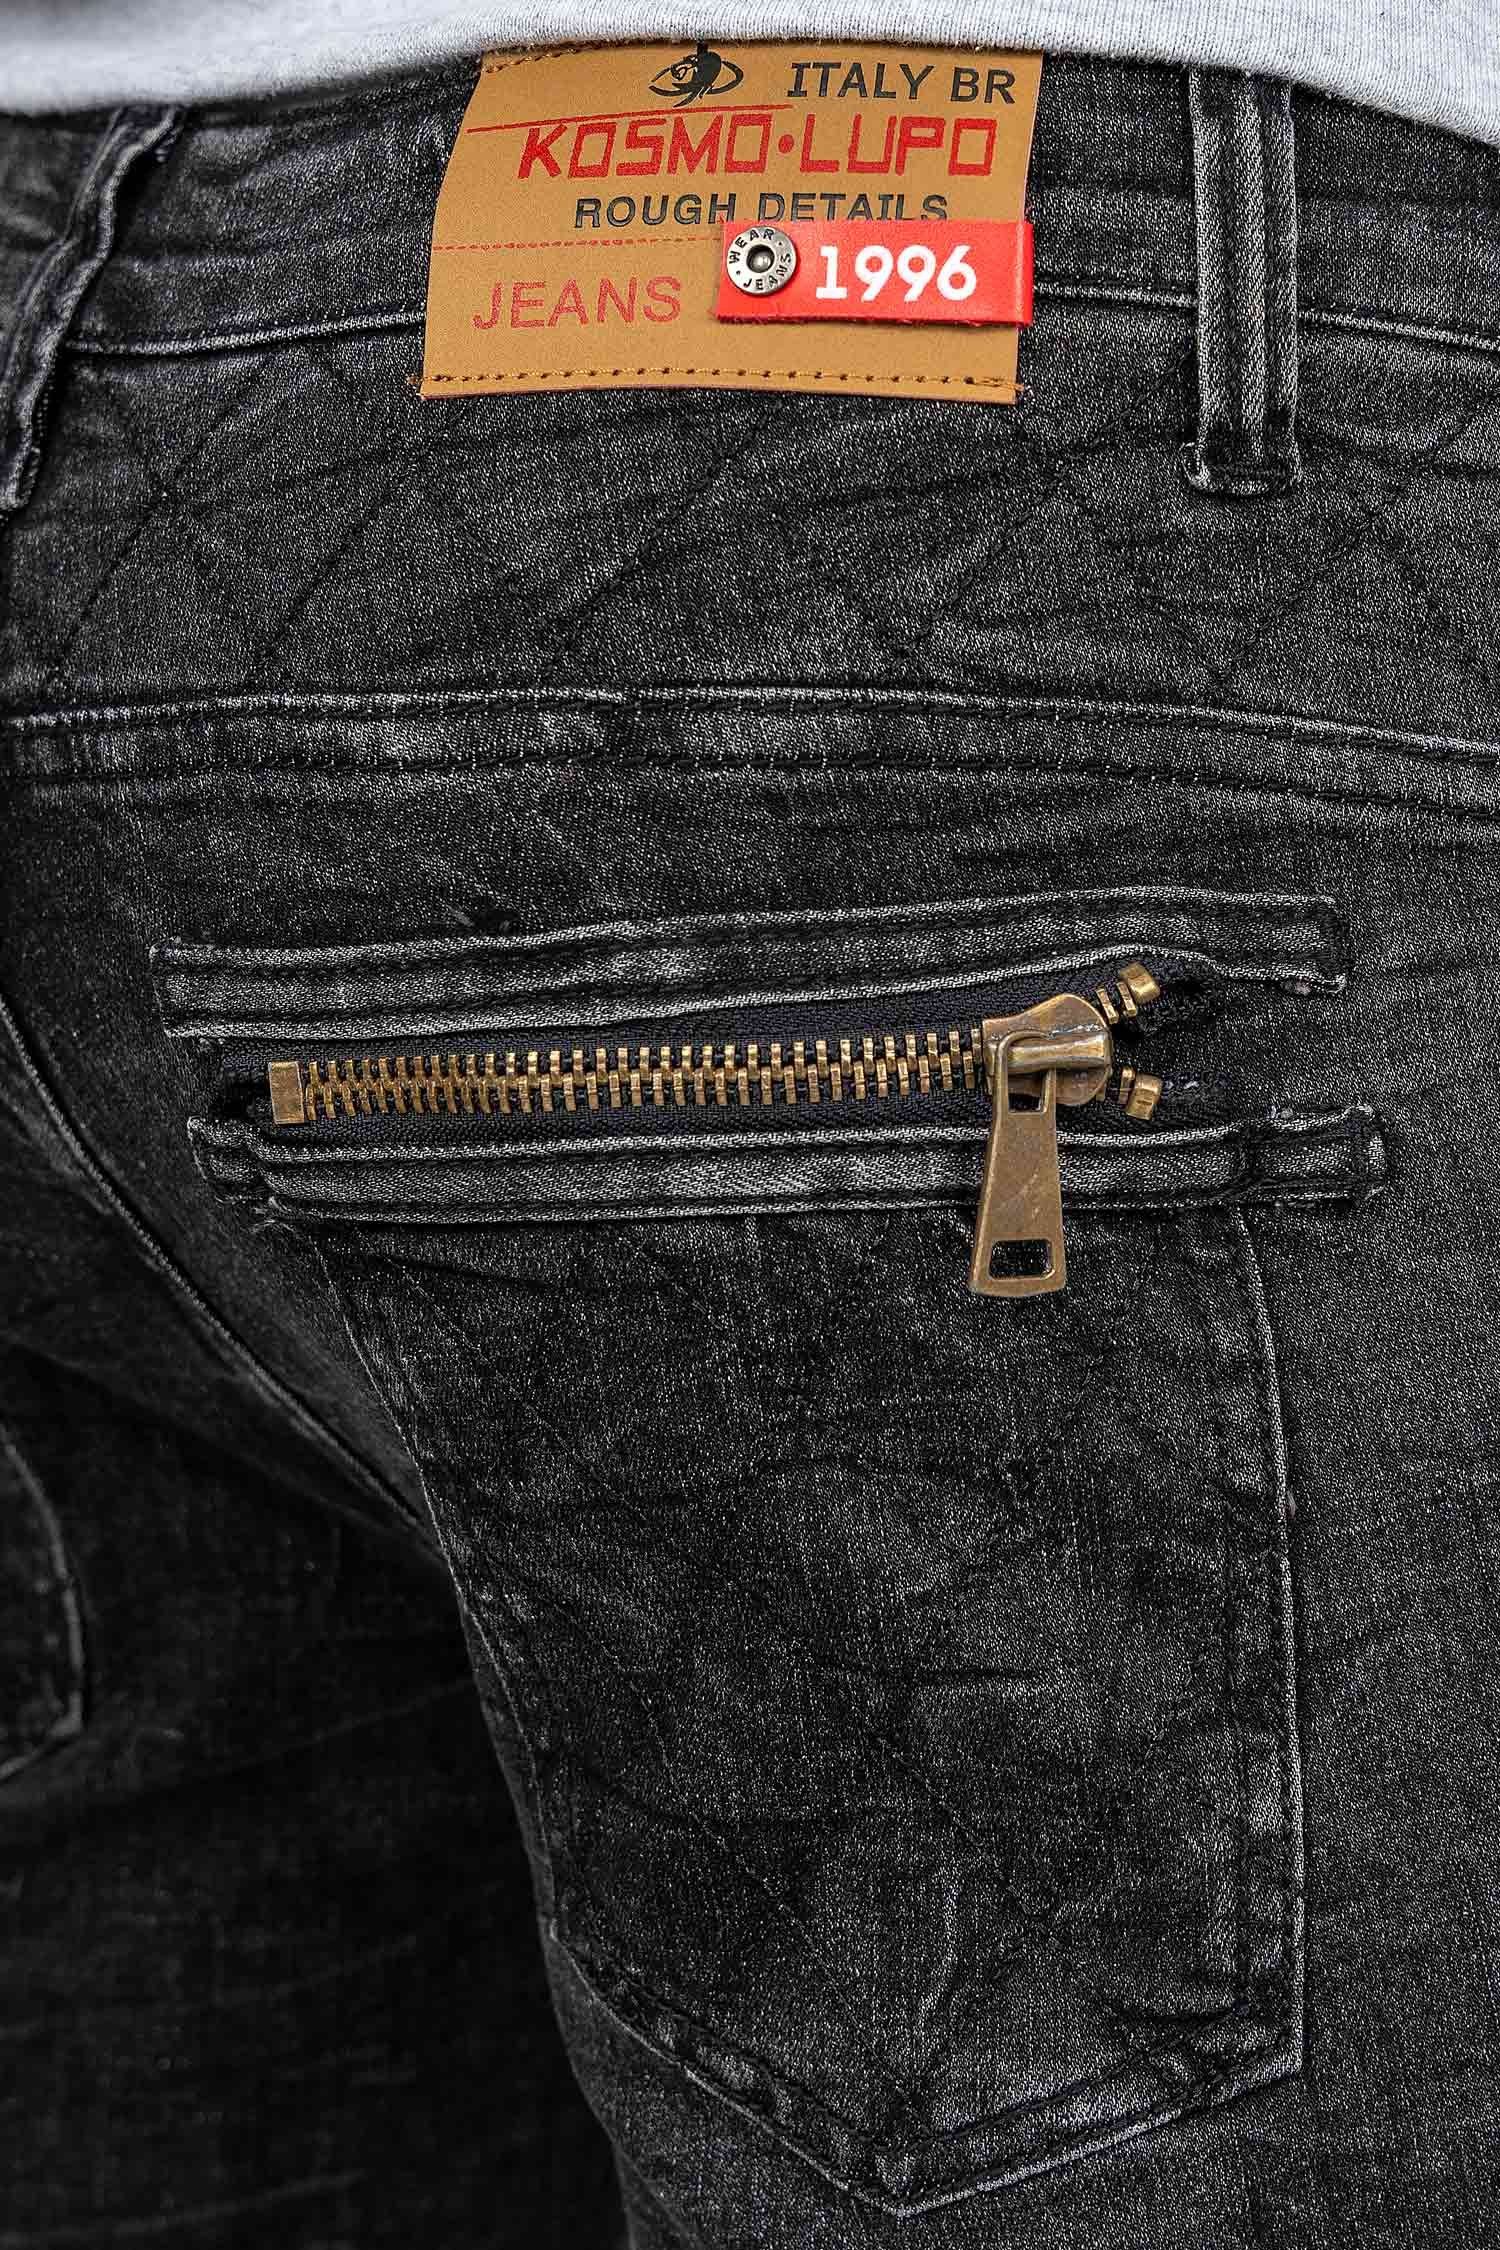 und Lupo Hose 5-Pocket-Jeans Auffällige mit Verzierungen schwarz Nieten Herren BA-KM060 Kosmo